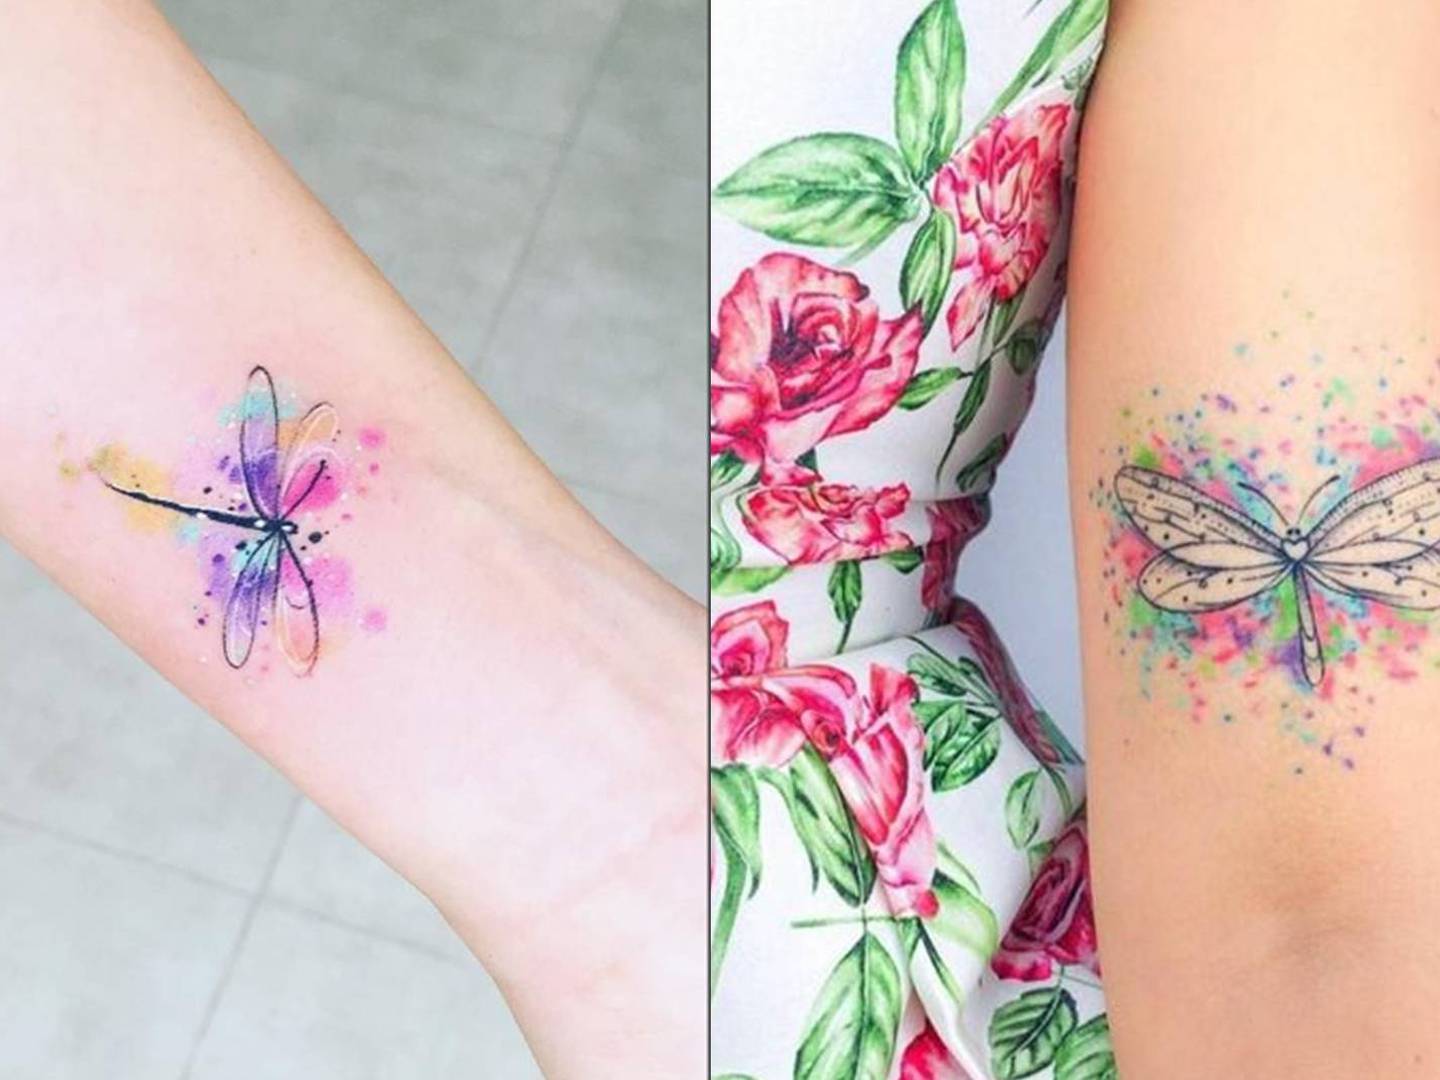 Tatuajes de libélulas para mujeres valientes que no le temen a los cambios  en la vida – Nueva Mujer